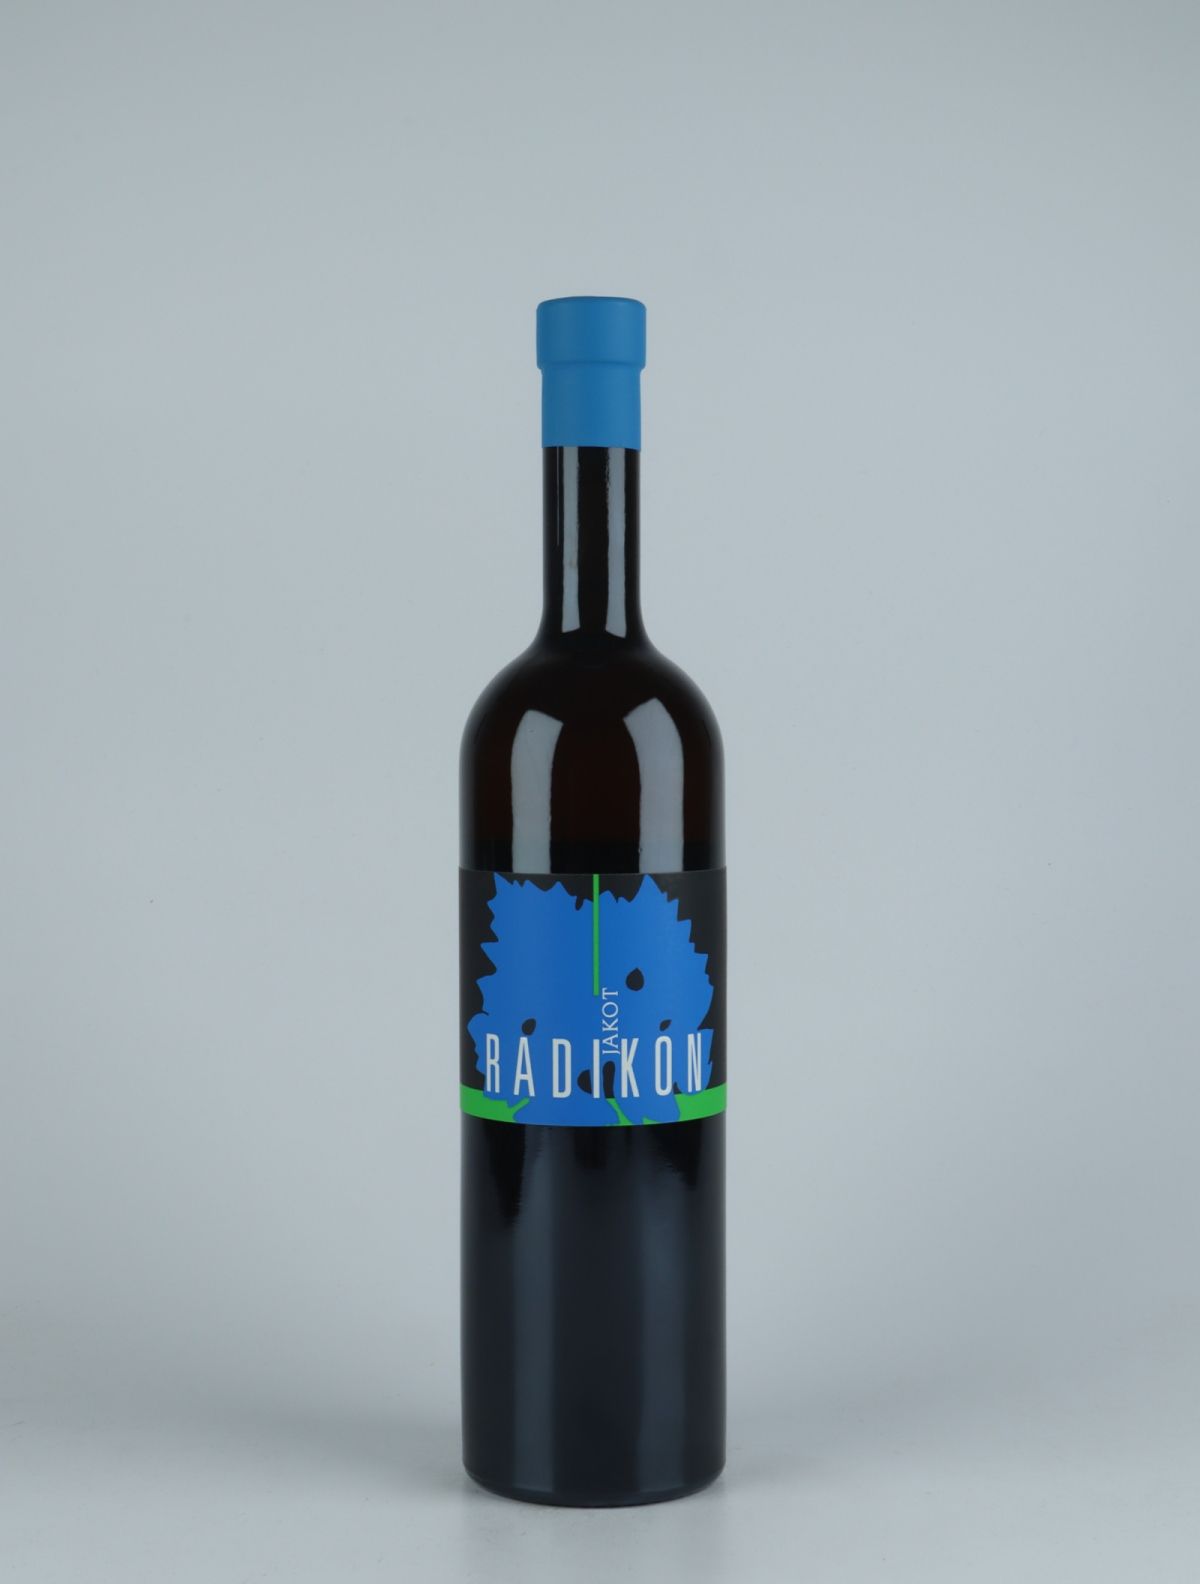 A bottle 2016 Jakot Orange wine from Radikon, Friuli in Italy